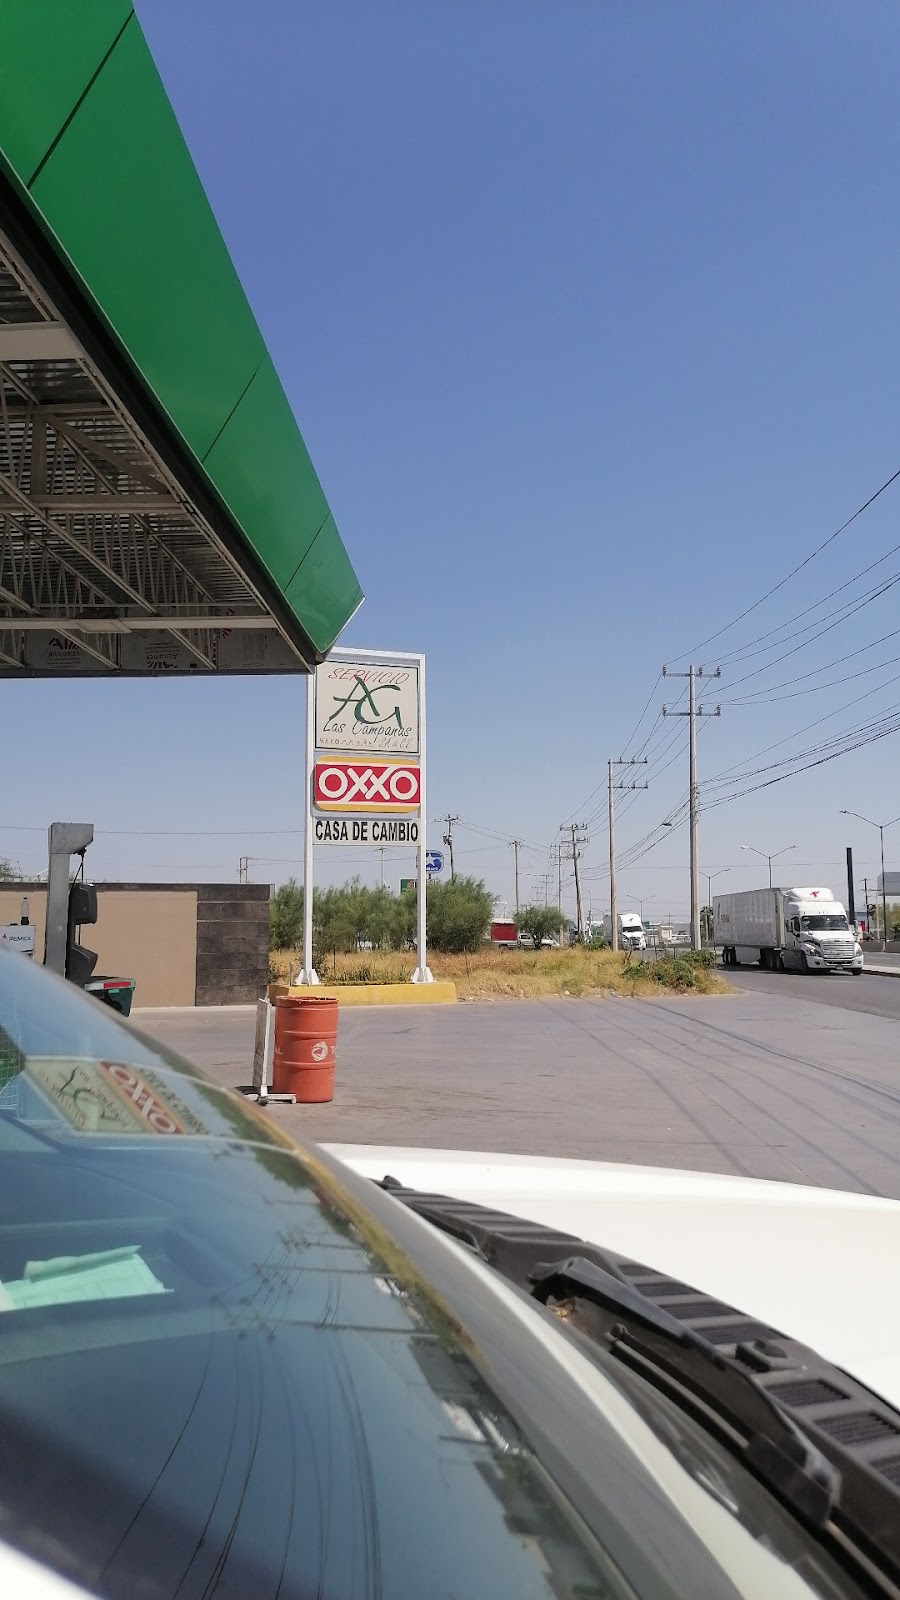 Gasolinera Pemex | Carr. Nacional No. 8550, Colinas del Sur, 88295 Nuevo Laredo, Tamps., Mexico | Phone: 800 736 3900